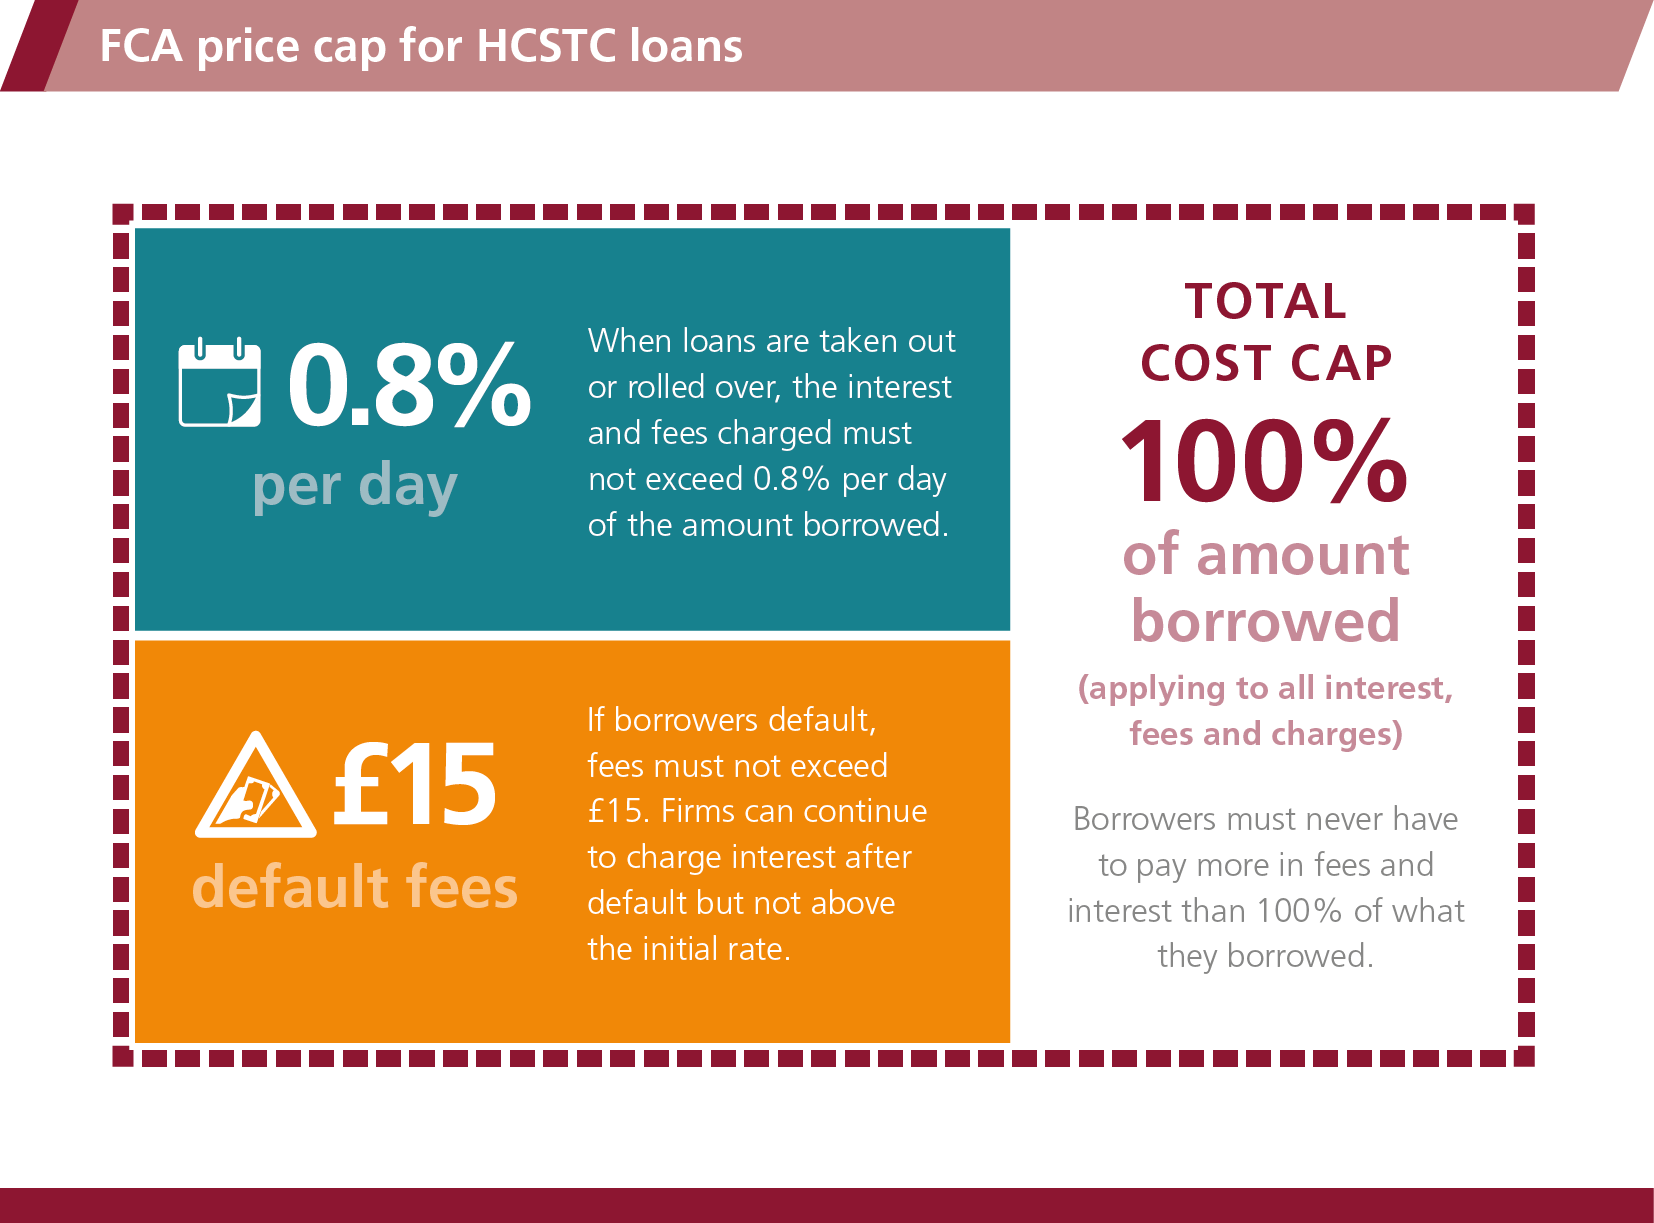 Graphic: FCA price cap for HCSTC loans